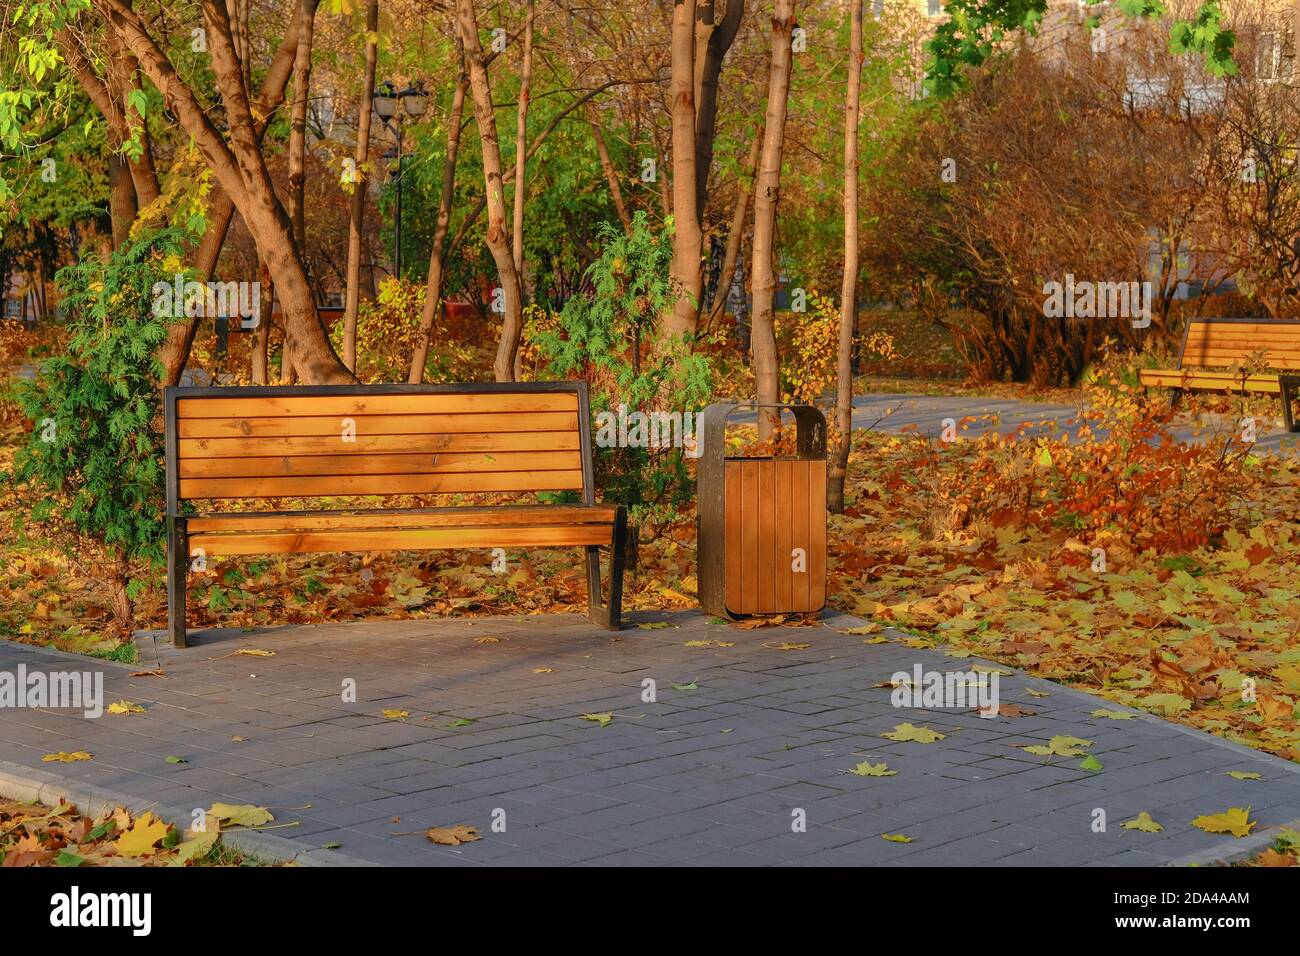 Robuste moderne urbane Straßenholzmöbel. Leere Holzbank und Urne auf hellem Herbstlaub Hintergrund im öffentlichen Park. Blatt fallen in der Stadt. Stockfoto